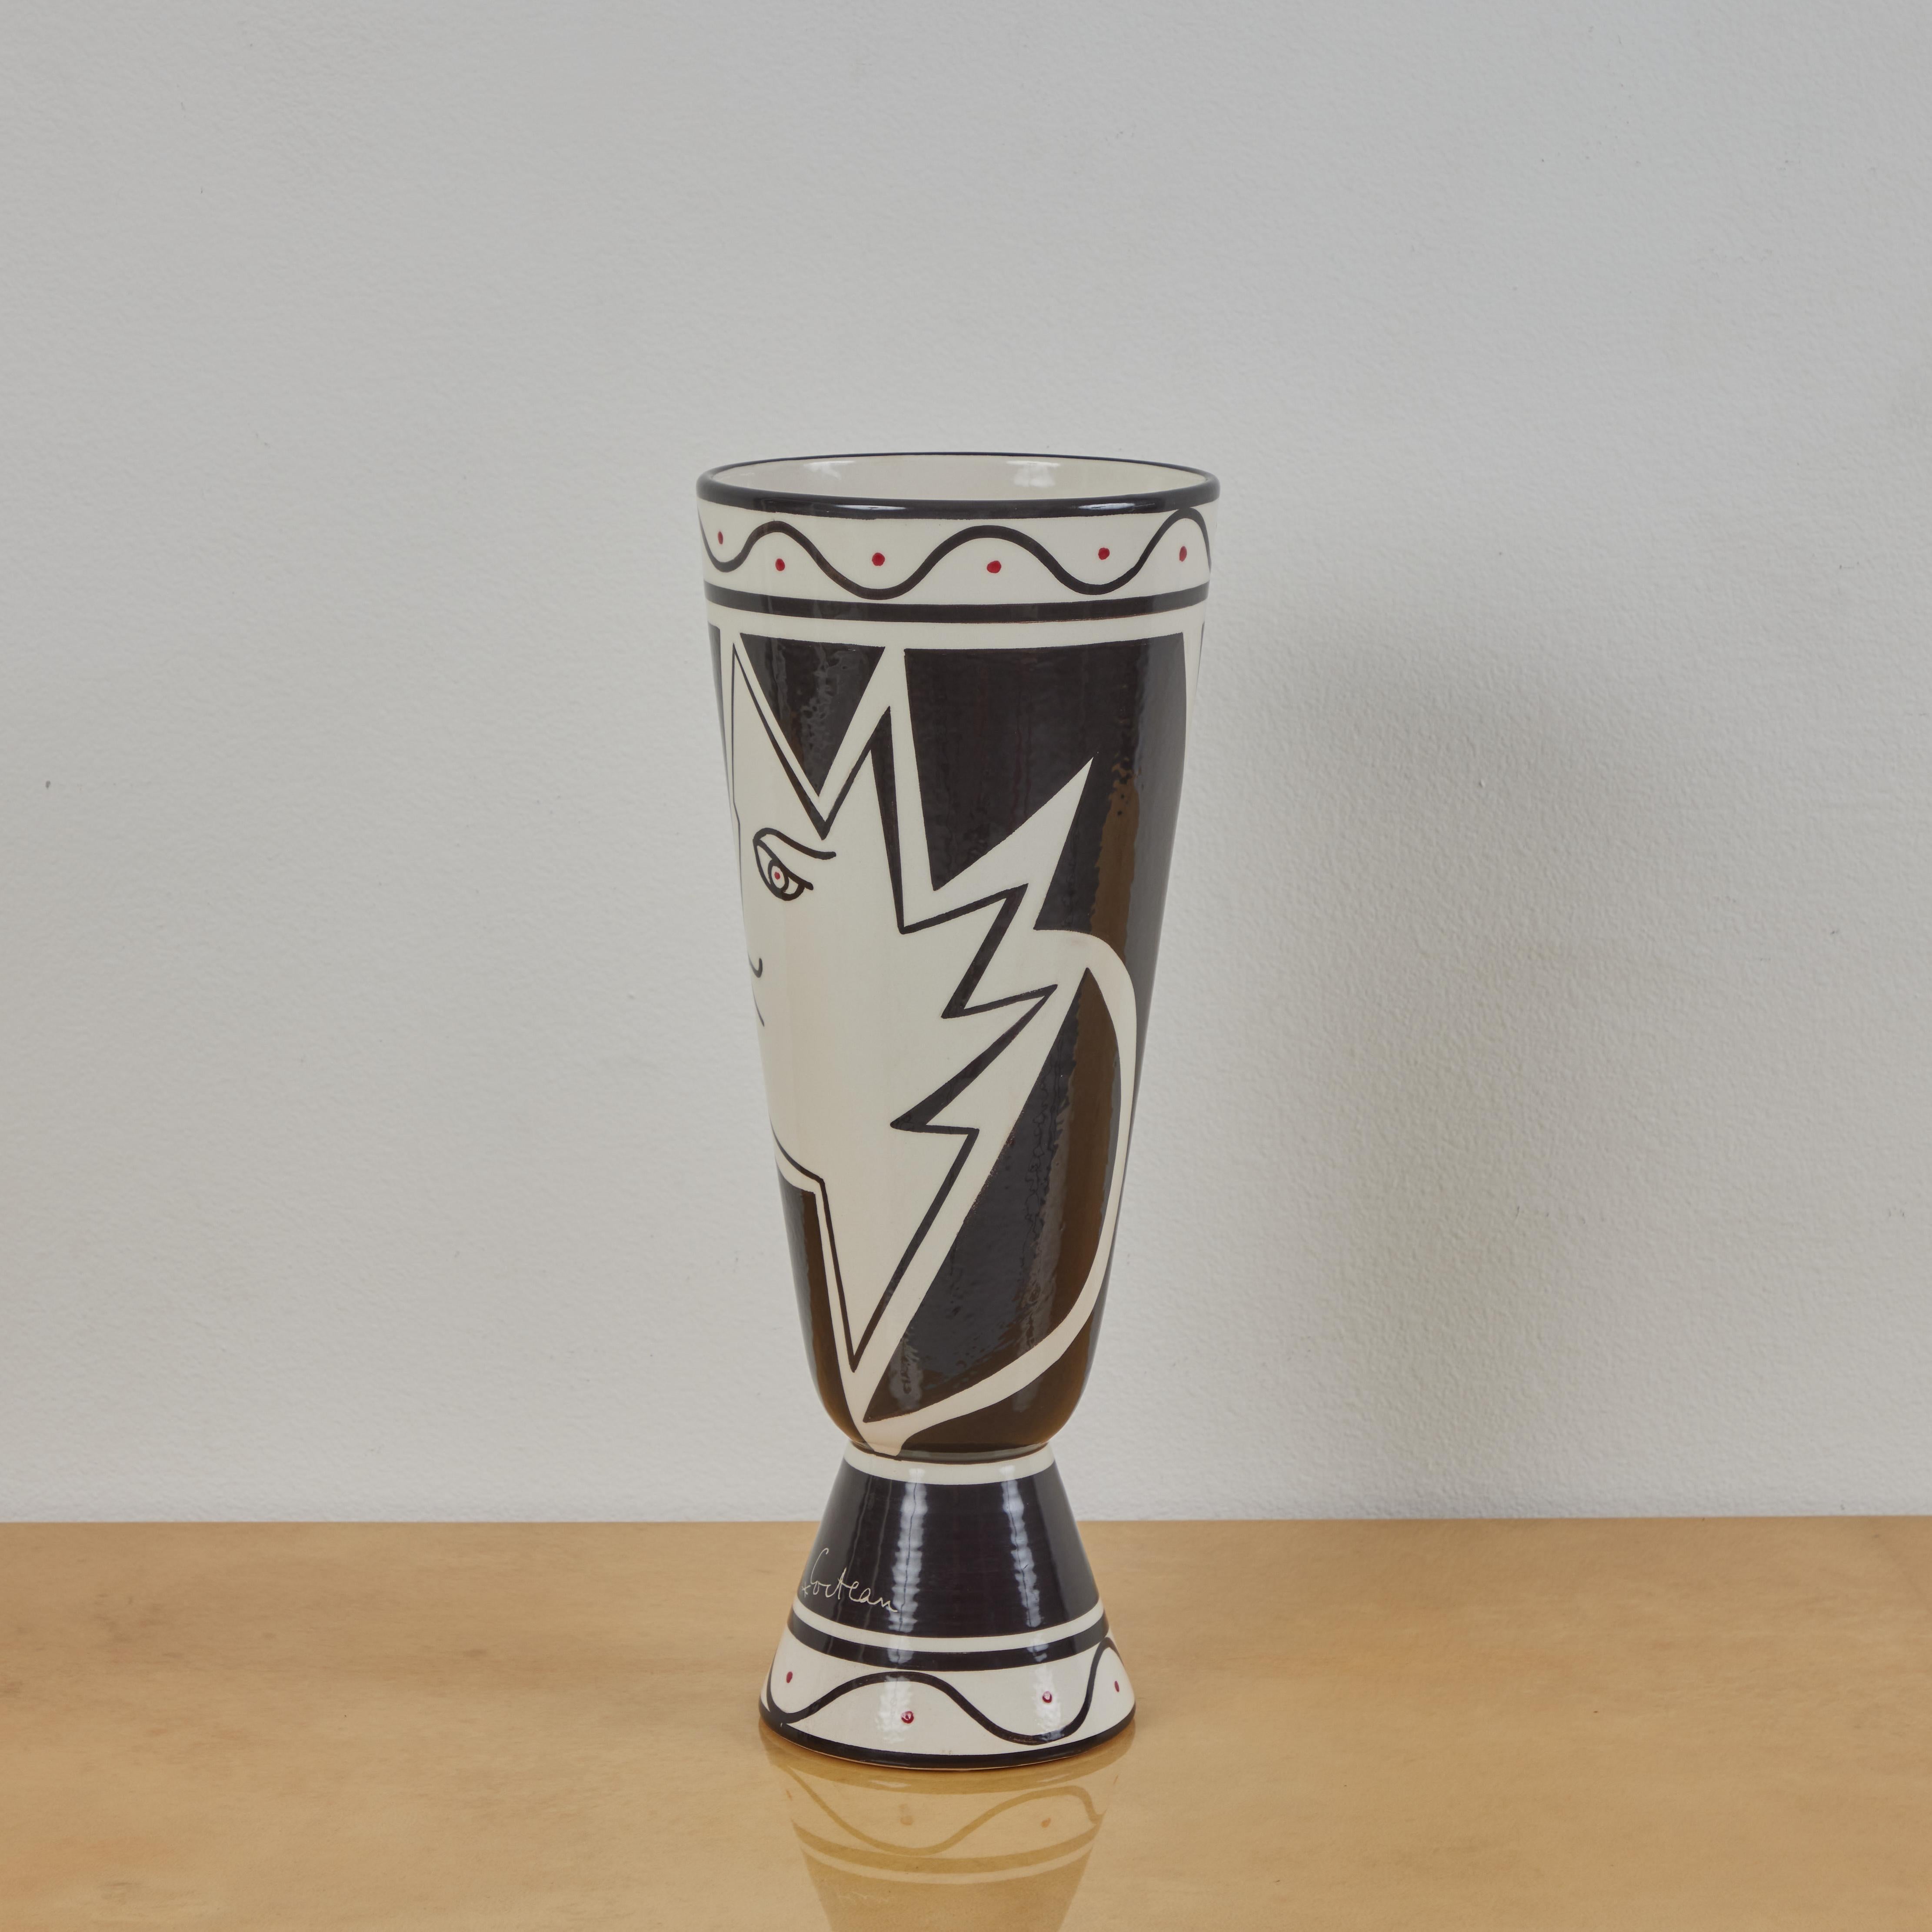 Dies ist eine dekorierte Vase, die von Roche Bobois in den 2010er Jahren hergestellt wurde. Die Vase basiert auf einem Entwurf von Jean Cocteau aus den frühen 1960er Jahren. Es besteht aus 2 geometrischen Profilen mit zusätzlichen Details in roter